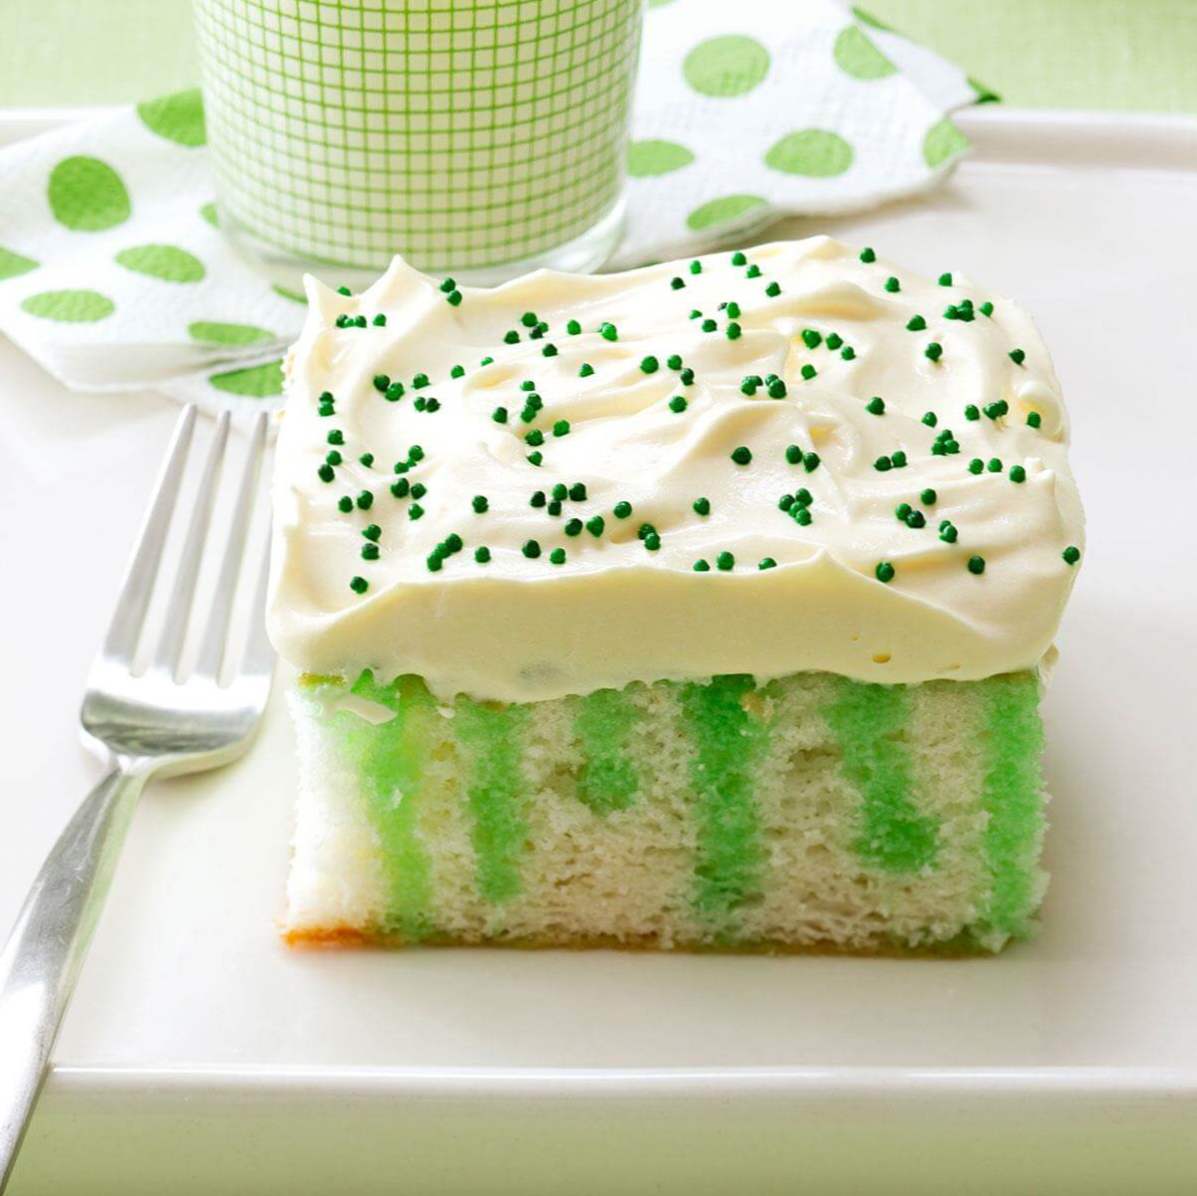 Bruk o 'Grønn kake / Tema / Dekorert